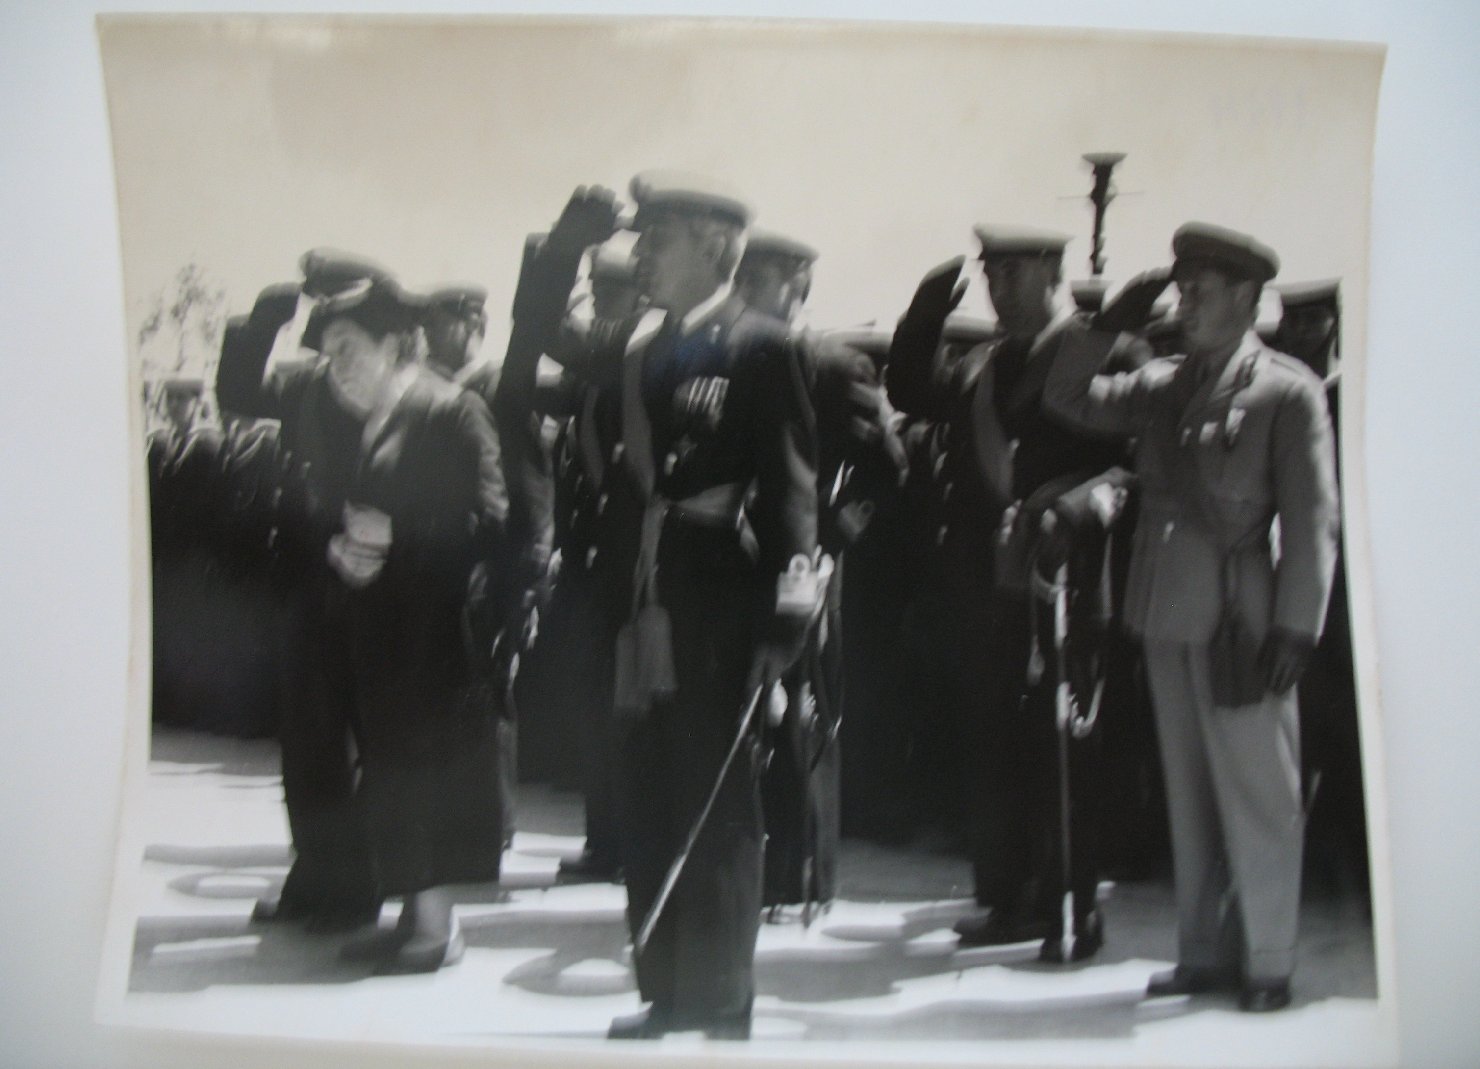 Garibaldi, clelia; marina militare. ufficiali e sottufficiali; isola di caprera - casa di garibaldi, cimitero privato (positivo)